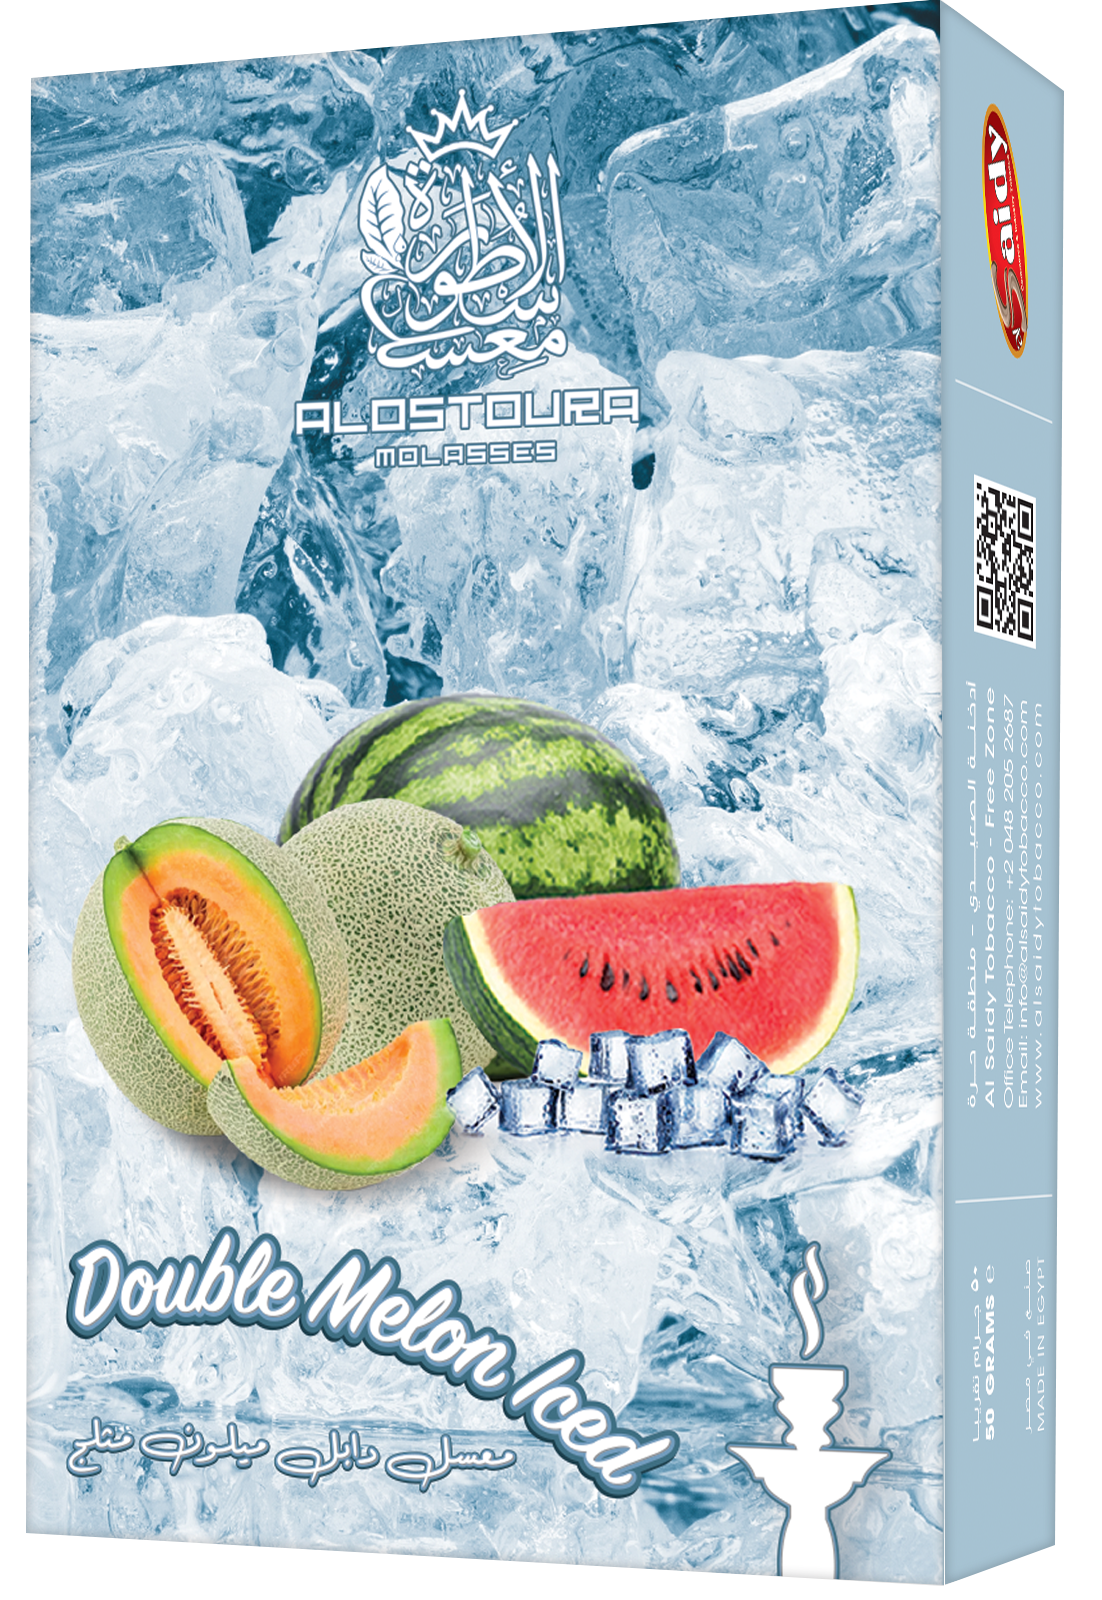 Double melon iced